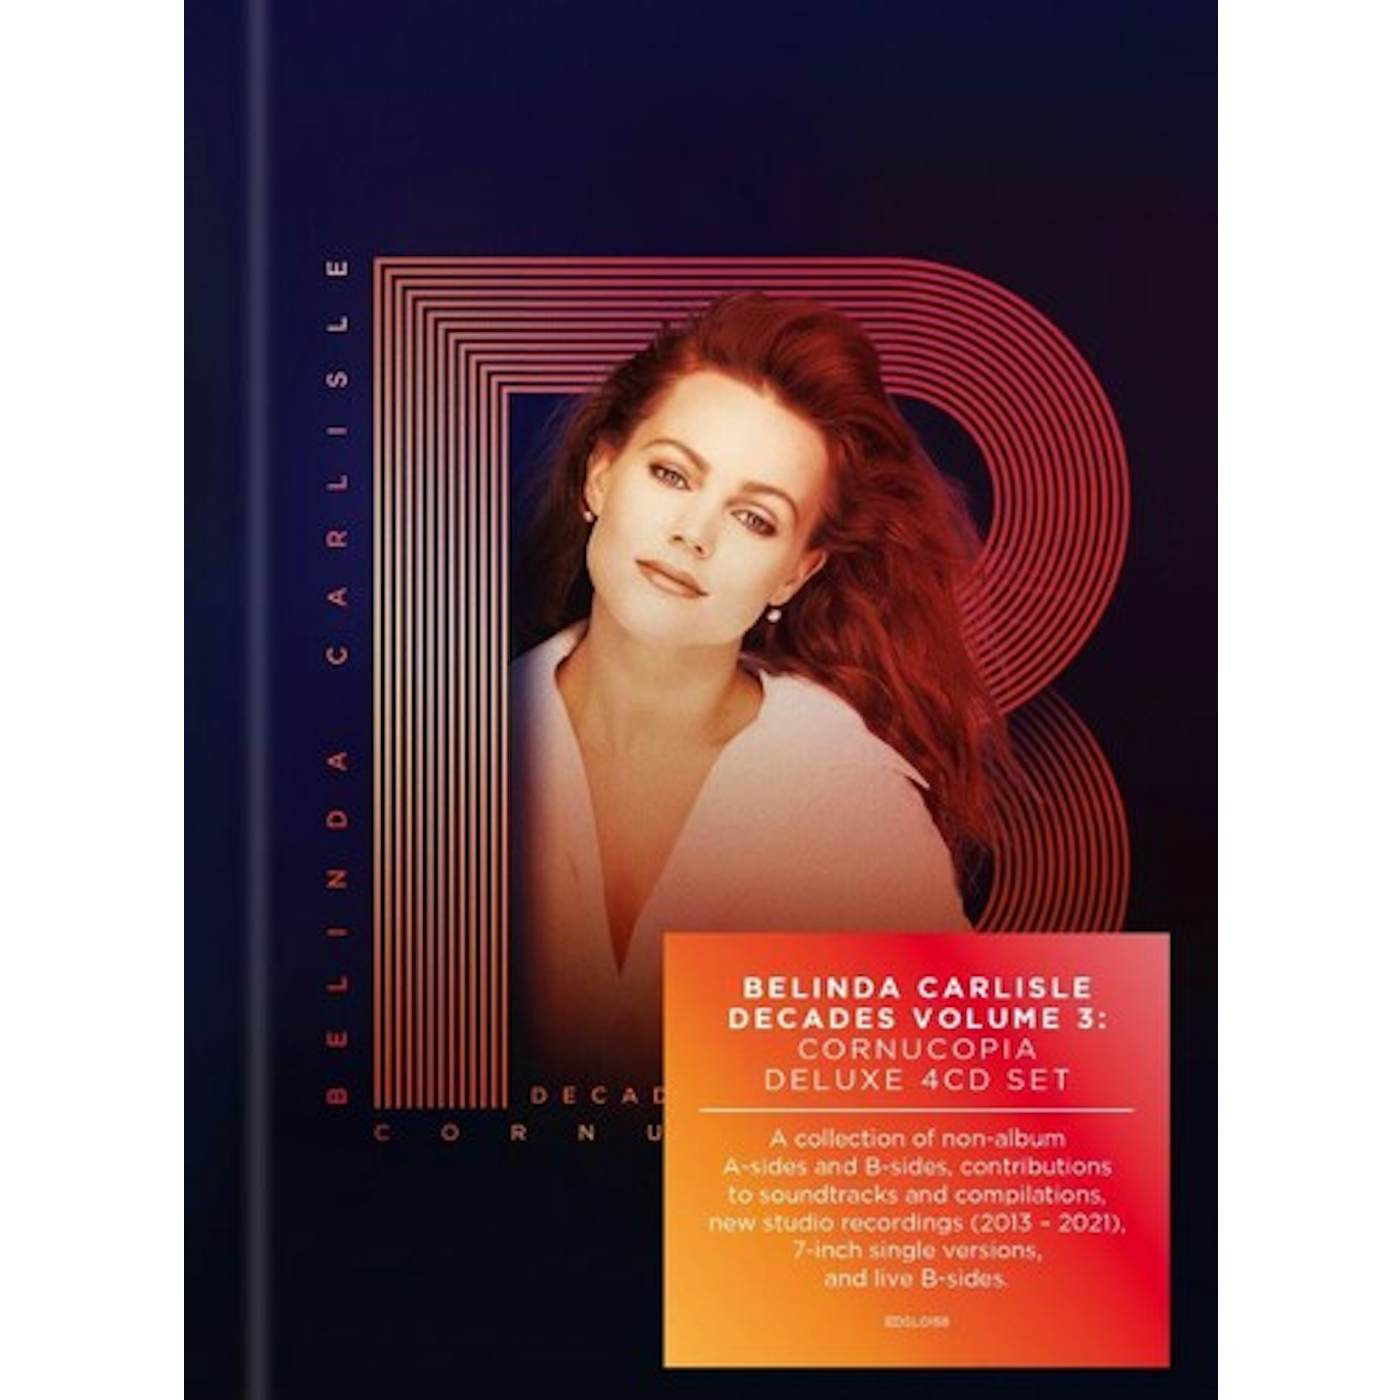 Belinda Carlisle DECADES VOLUME 3: CORNUCOPIA CD